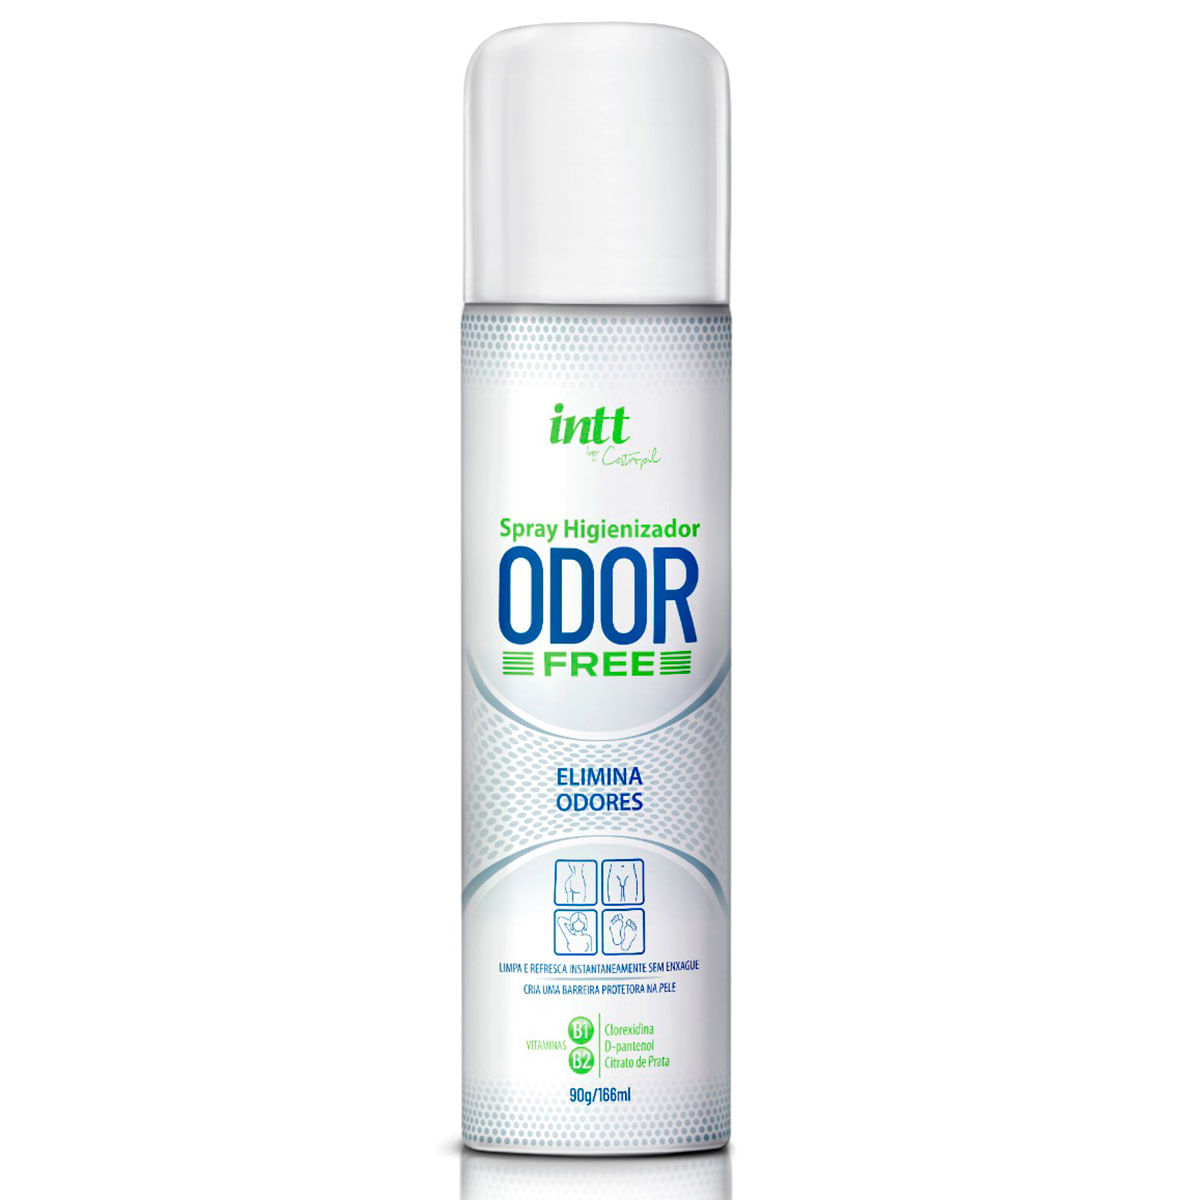 Odor Free Spray Higienizador Neutralizador de Odores 90g/166ml by Castropil Intt